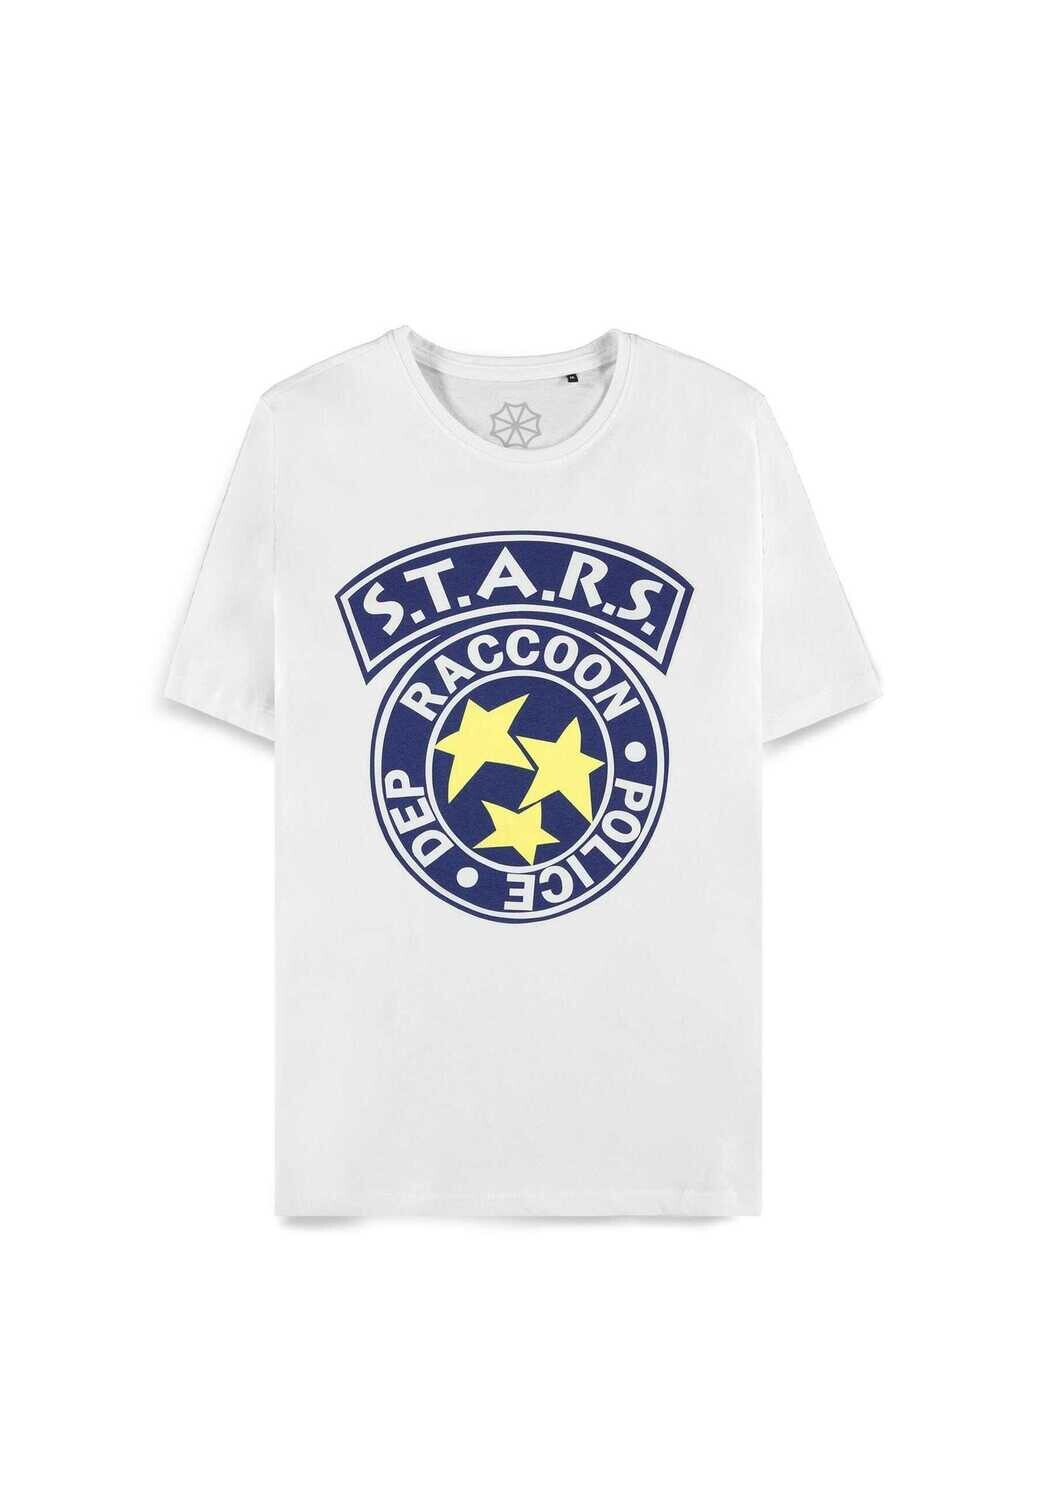 Resident Evil - S.T.A.R.S. - Men's Short Sleeved T-shirt